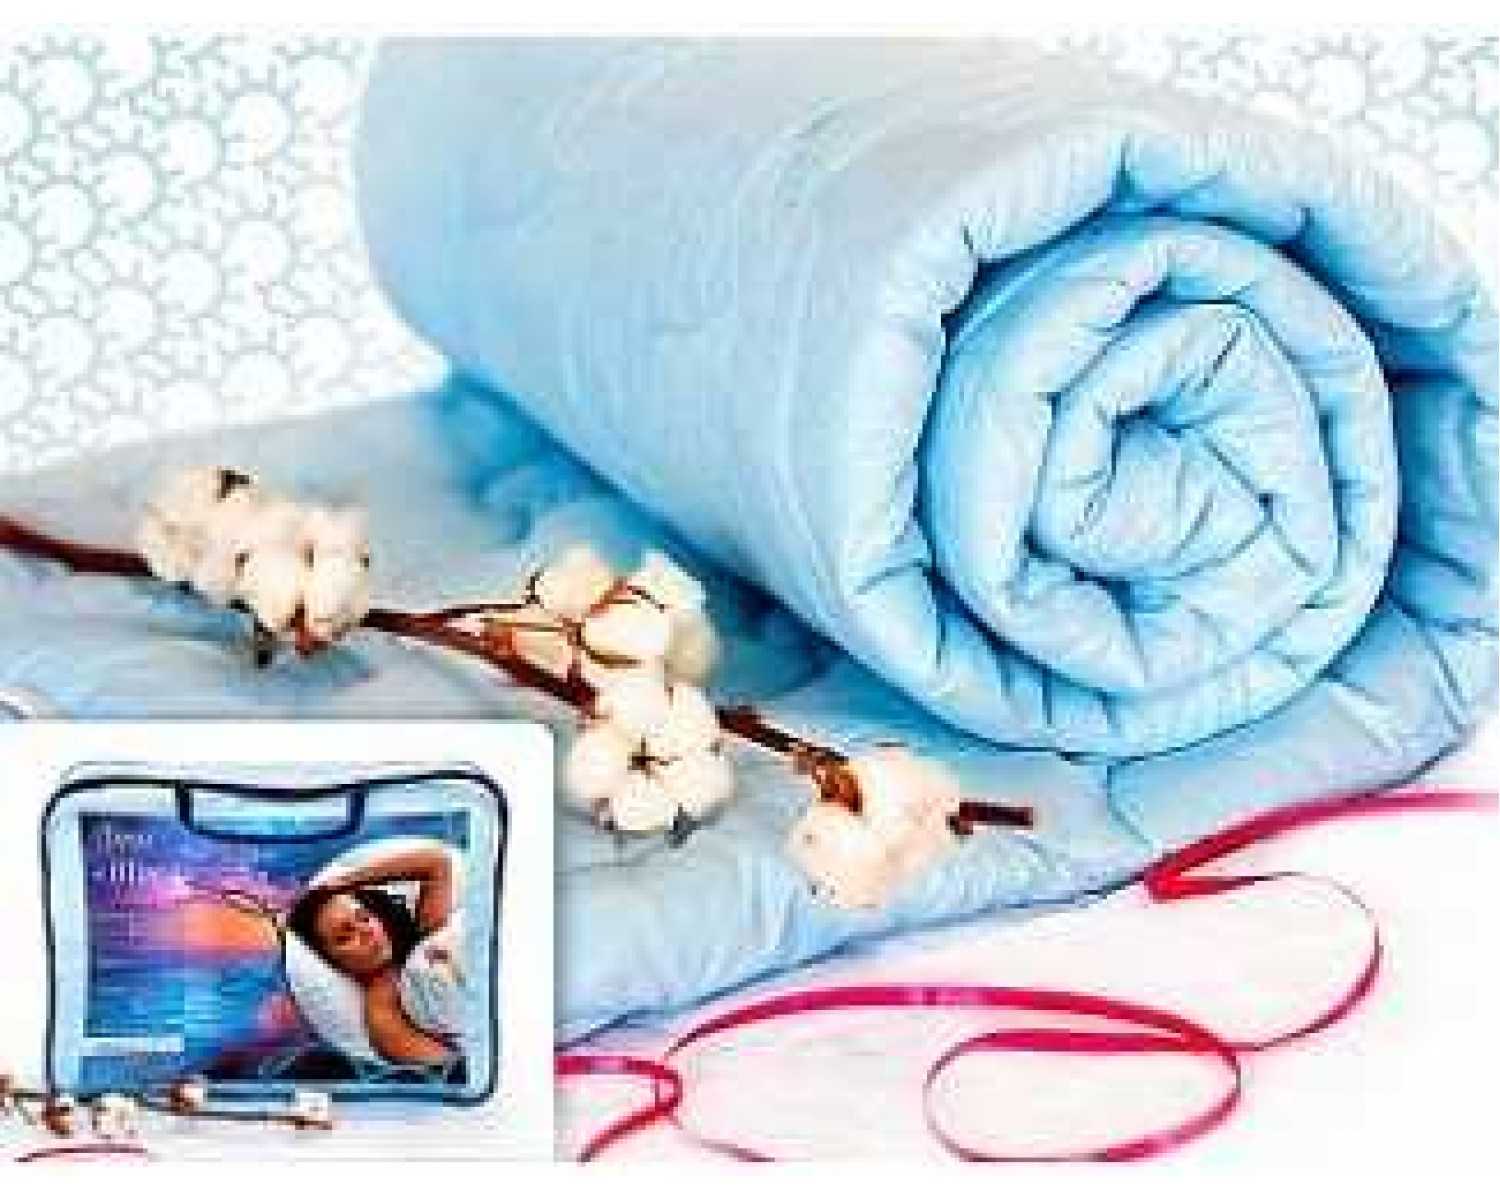 Какое одеяло лучше выбрать? виды одеял | buzunov.ru